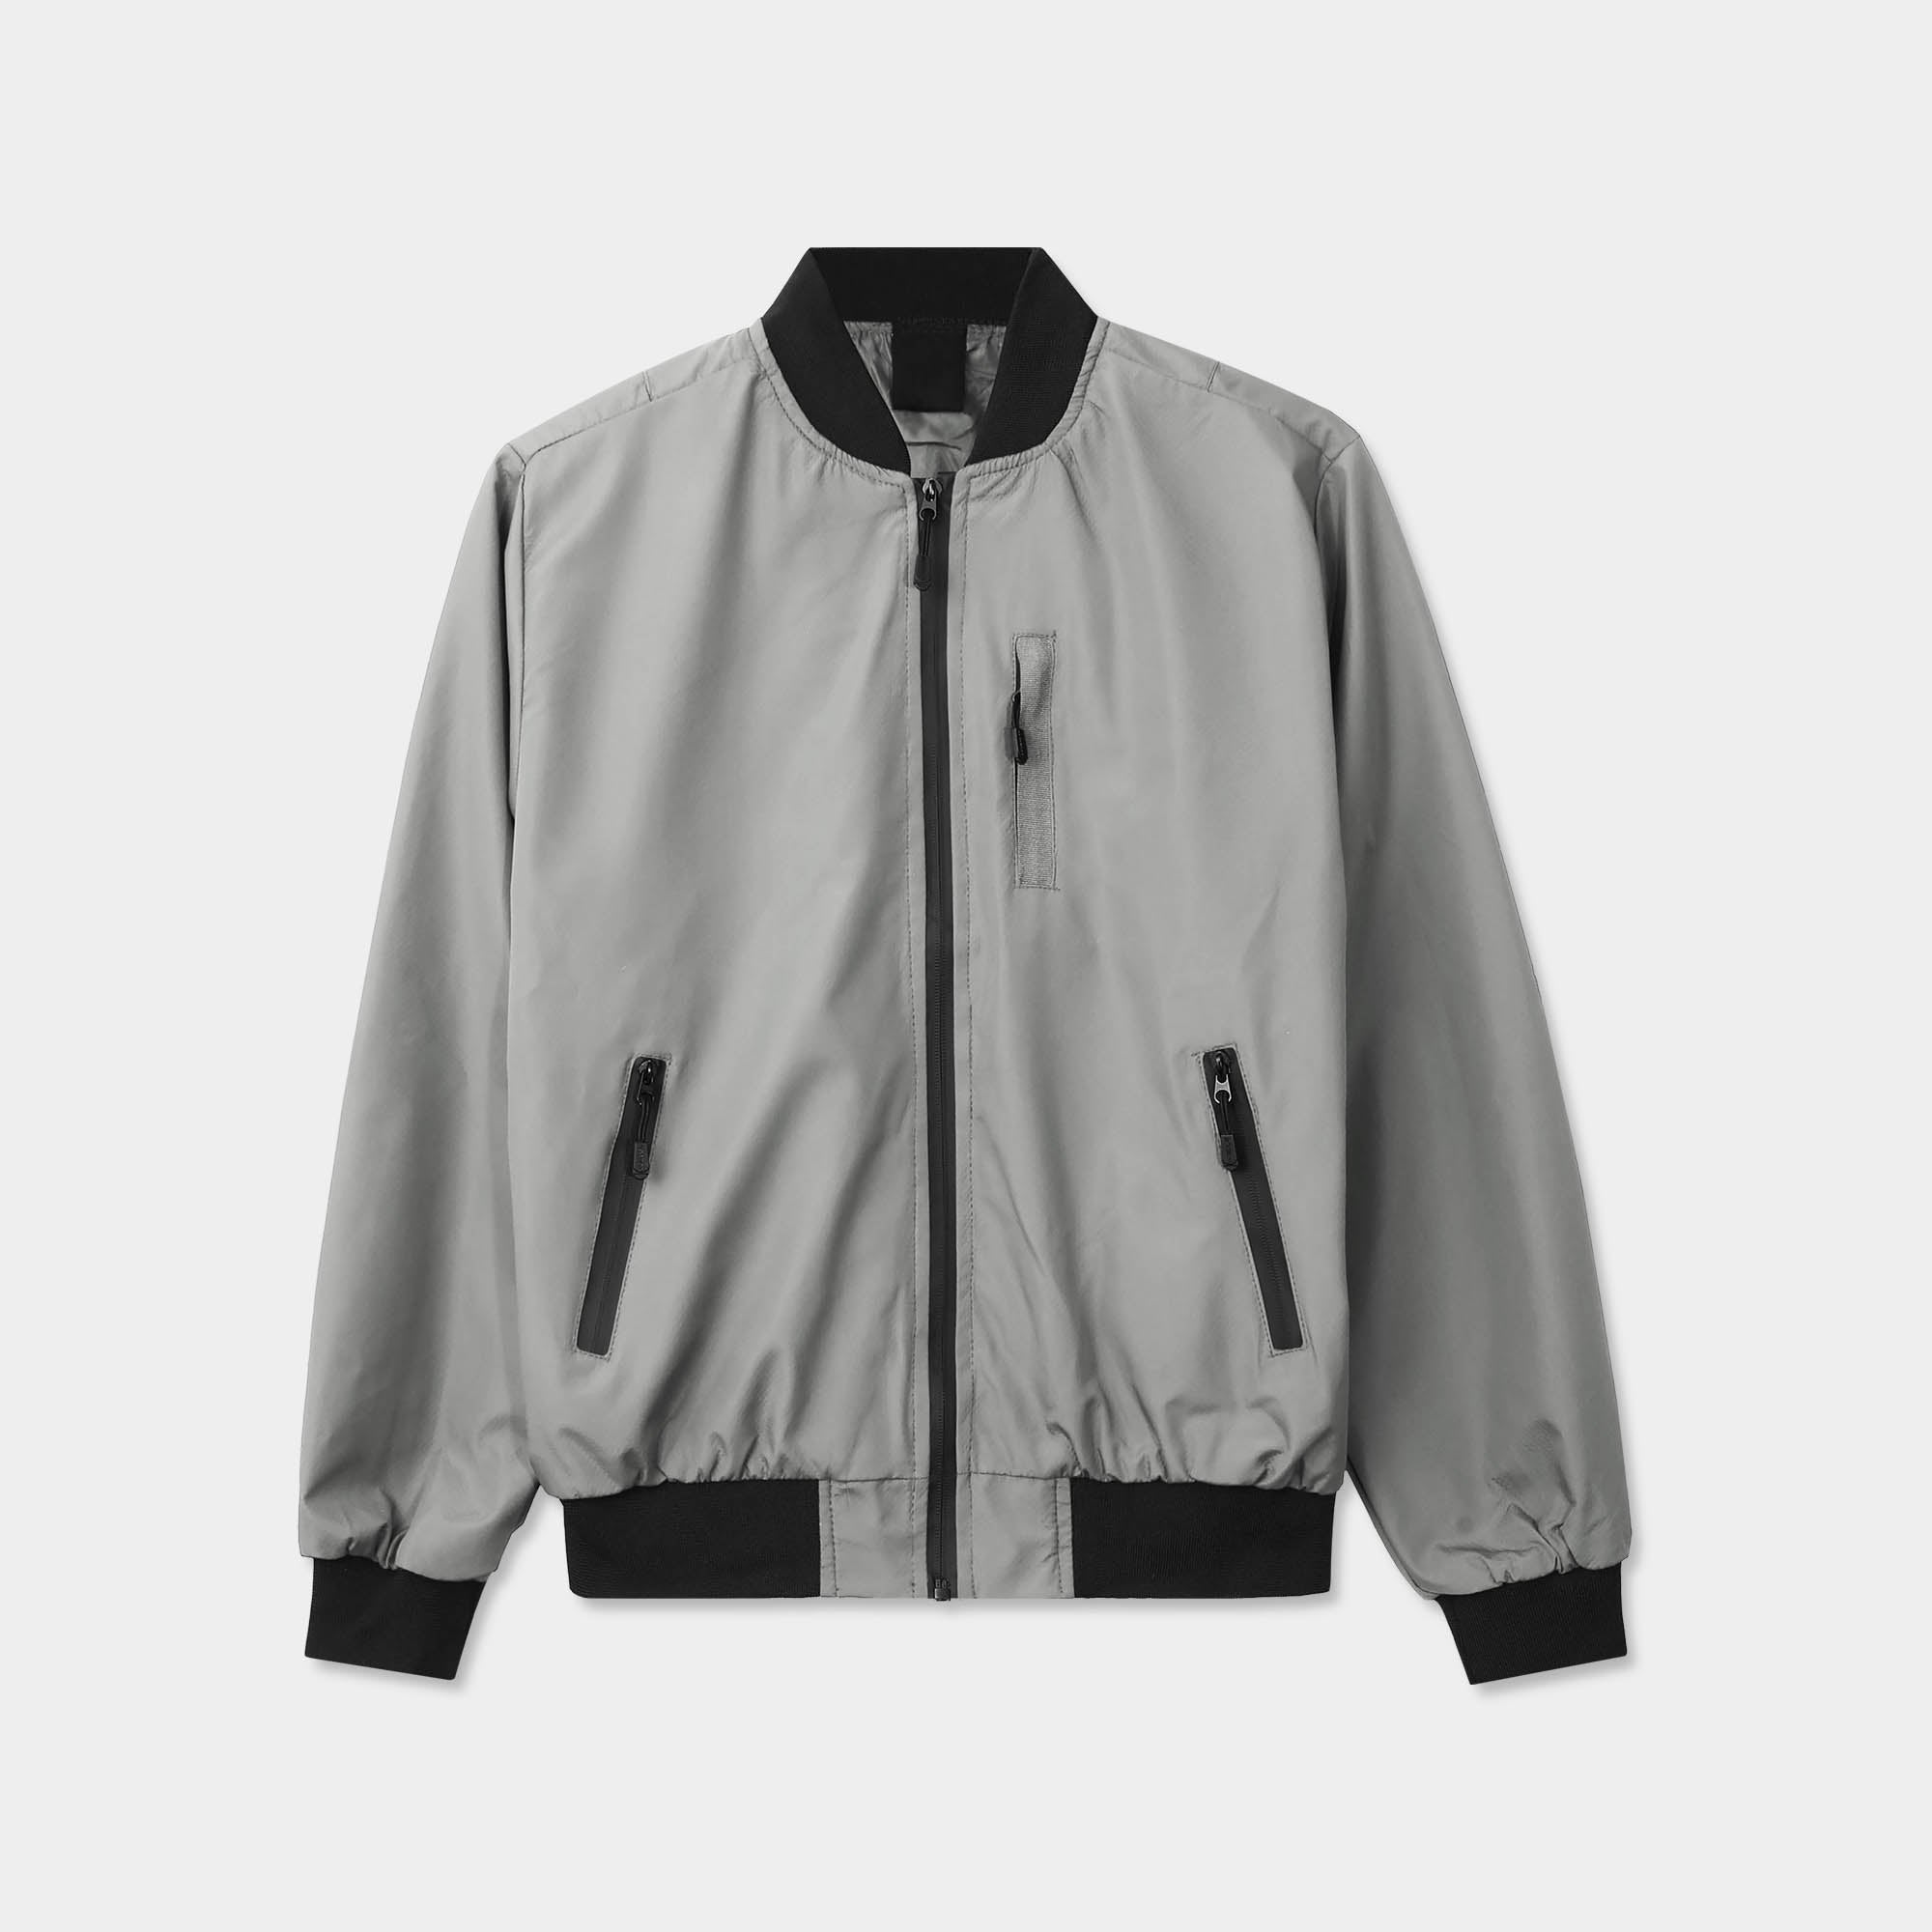 bomber jacket_mens bomber jacket_aviators jacket_aviator jacket mens_oversized bomber jacket_best bomber jackets_Gray